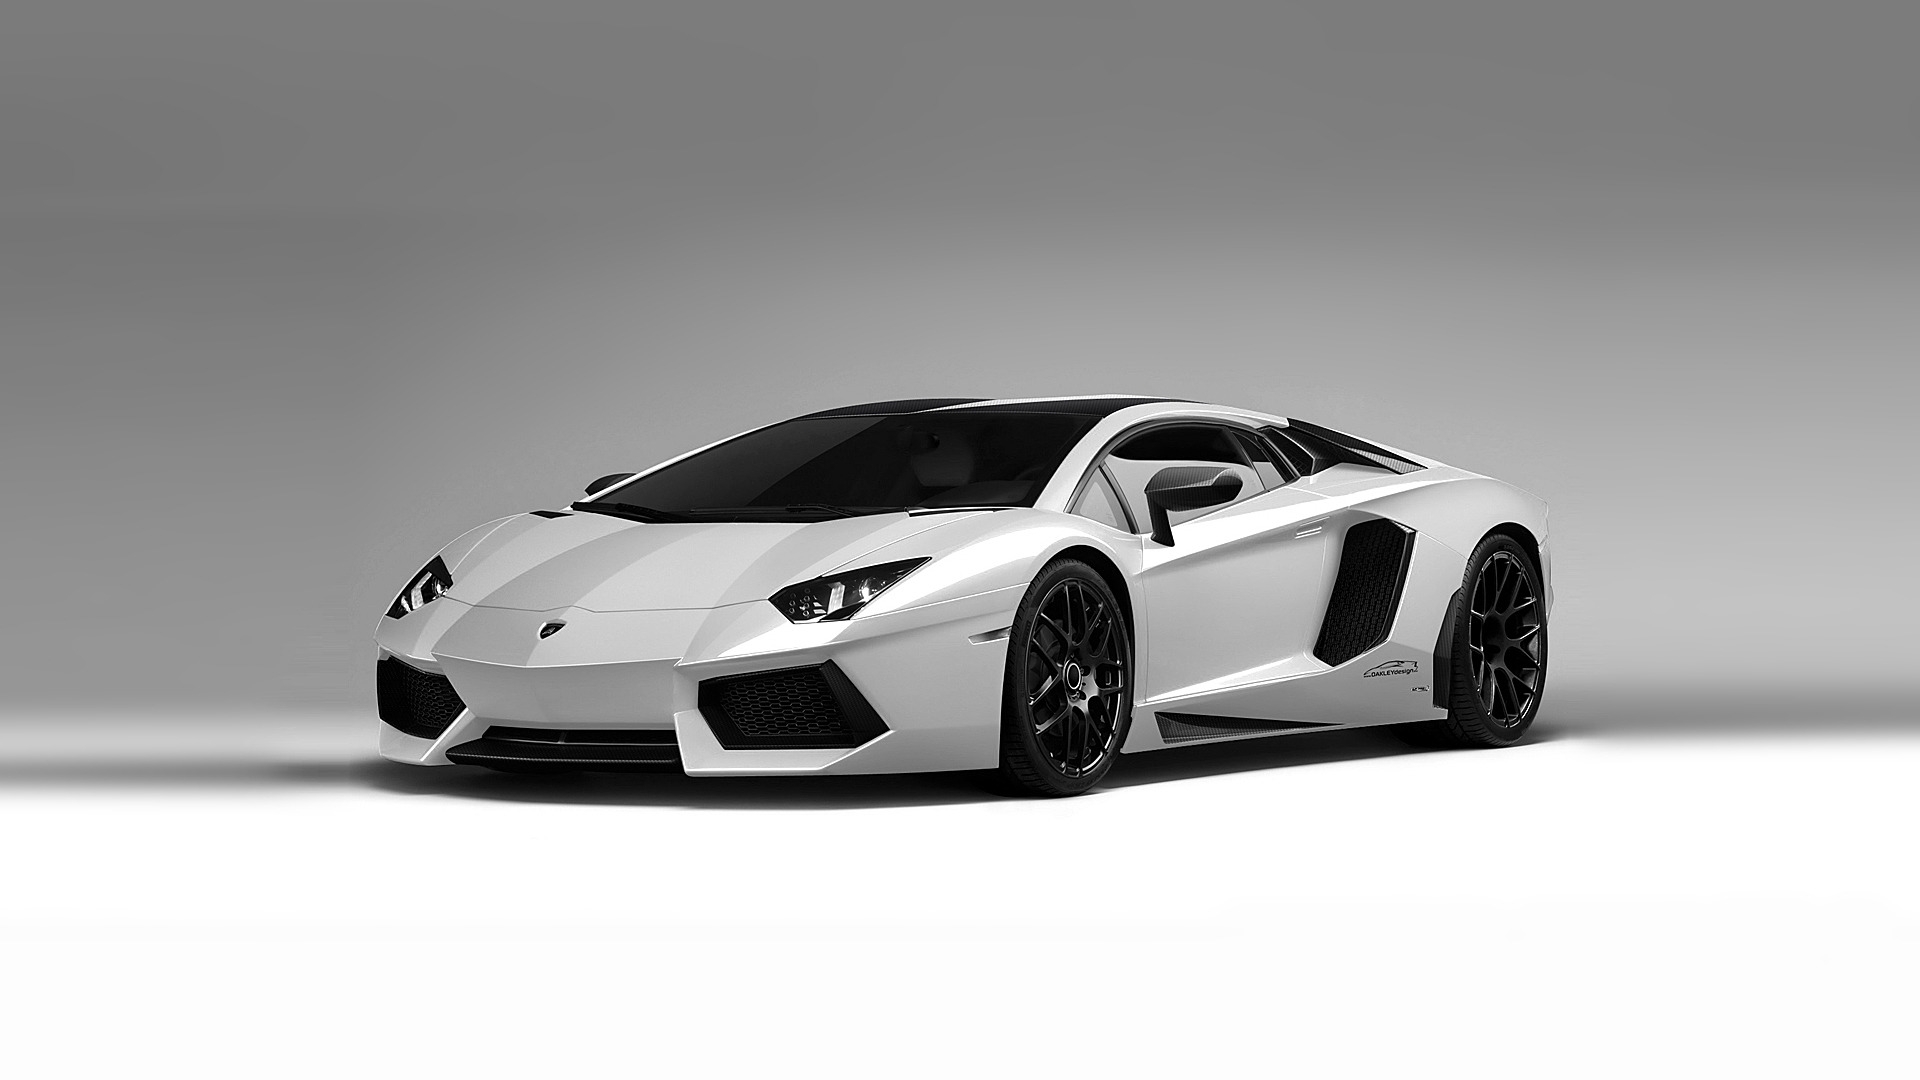 Lamborghini Aventador White for 1920 x 1080 HDTV 1080p resolution